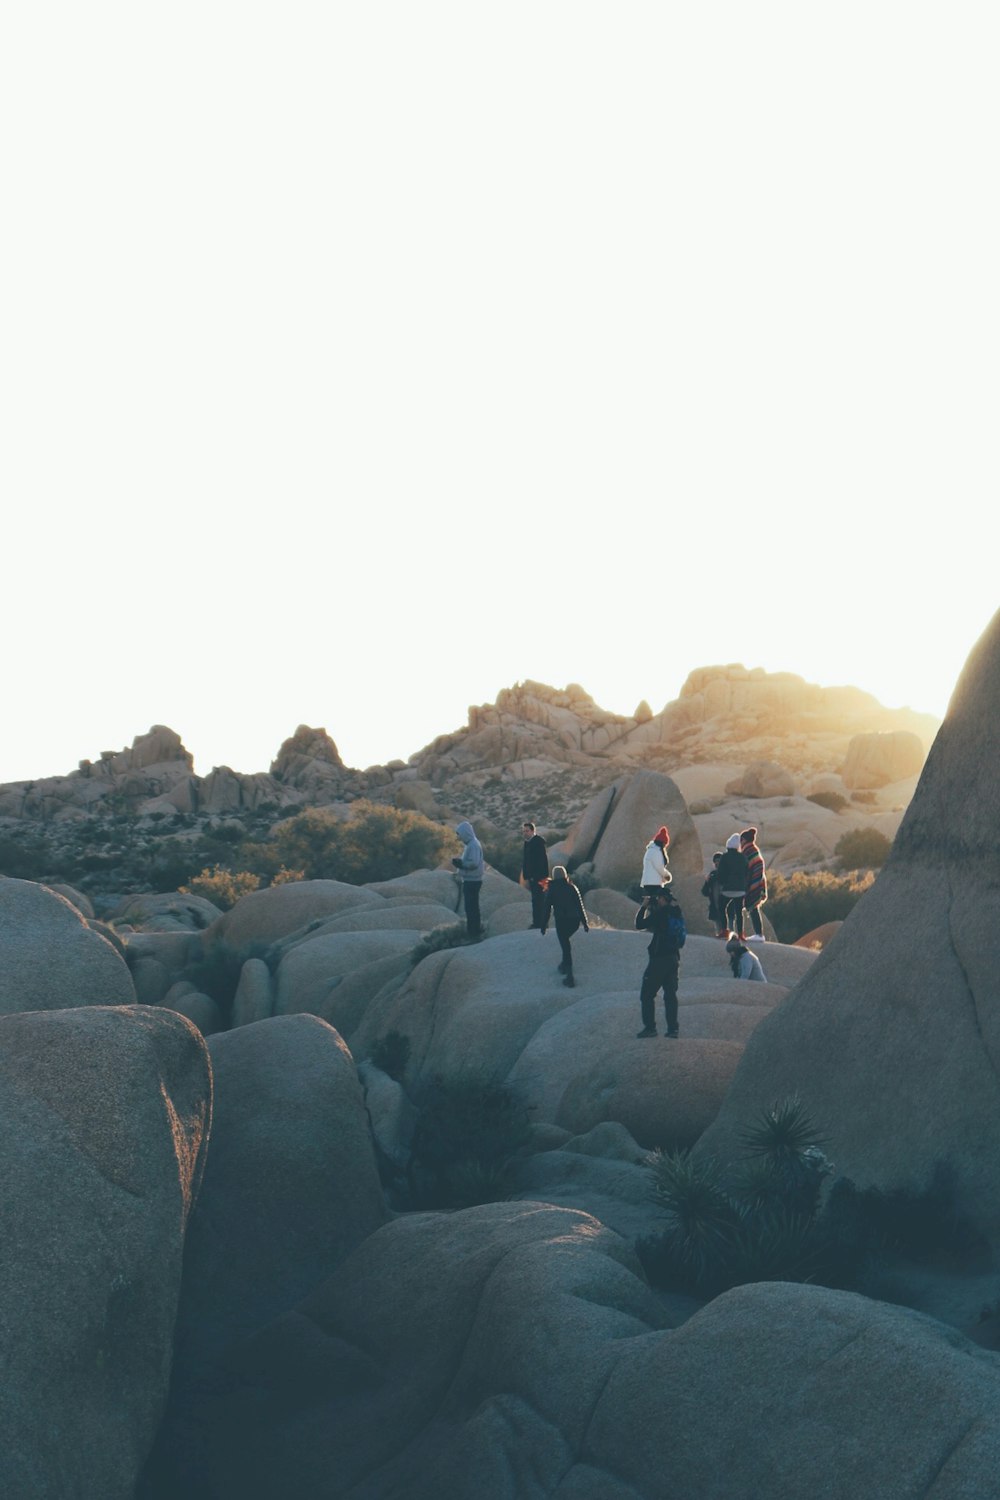 Persone in piedi sulle formazioni rocciose durante il giorno